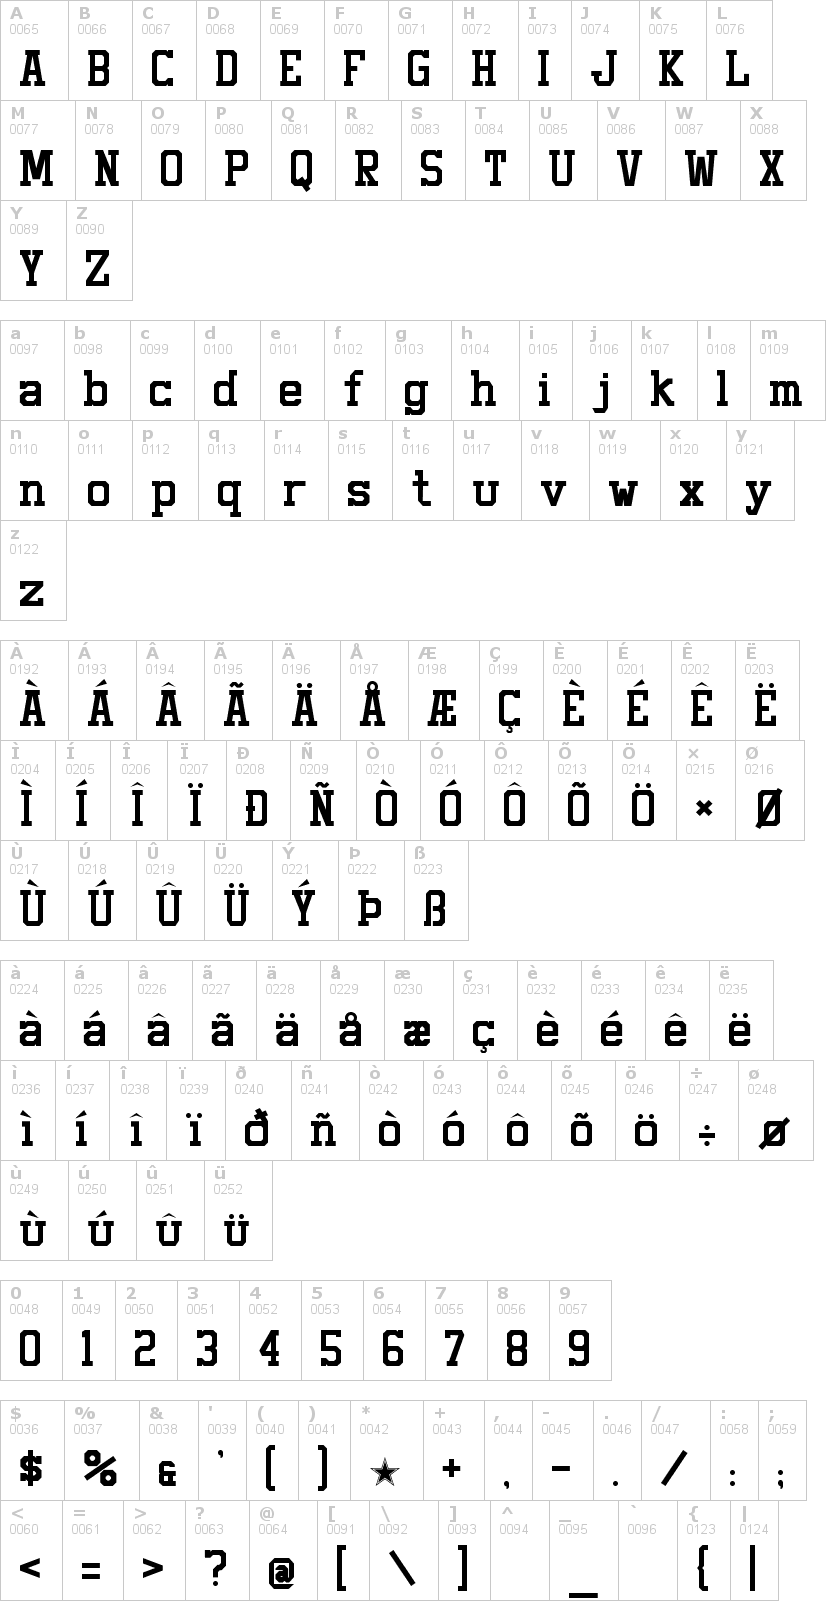 Lettere dell'alfabeto del font staubach con le quali è possibile realizzare adesivi prespaziati